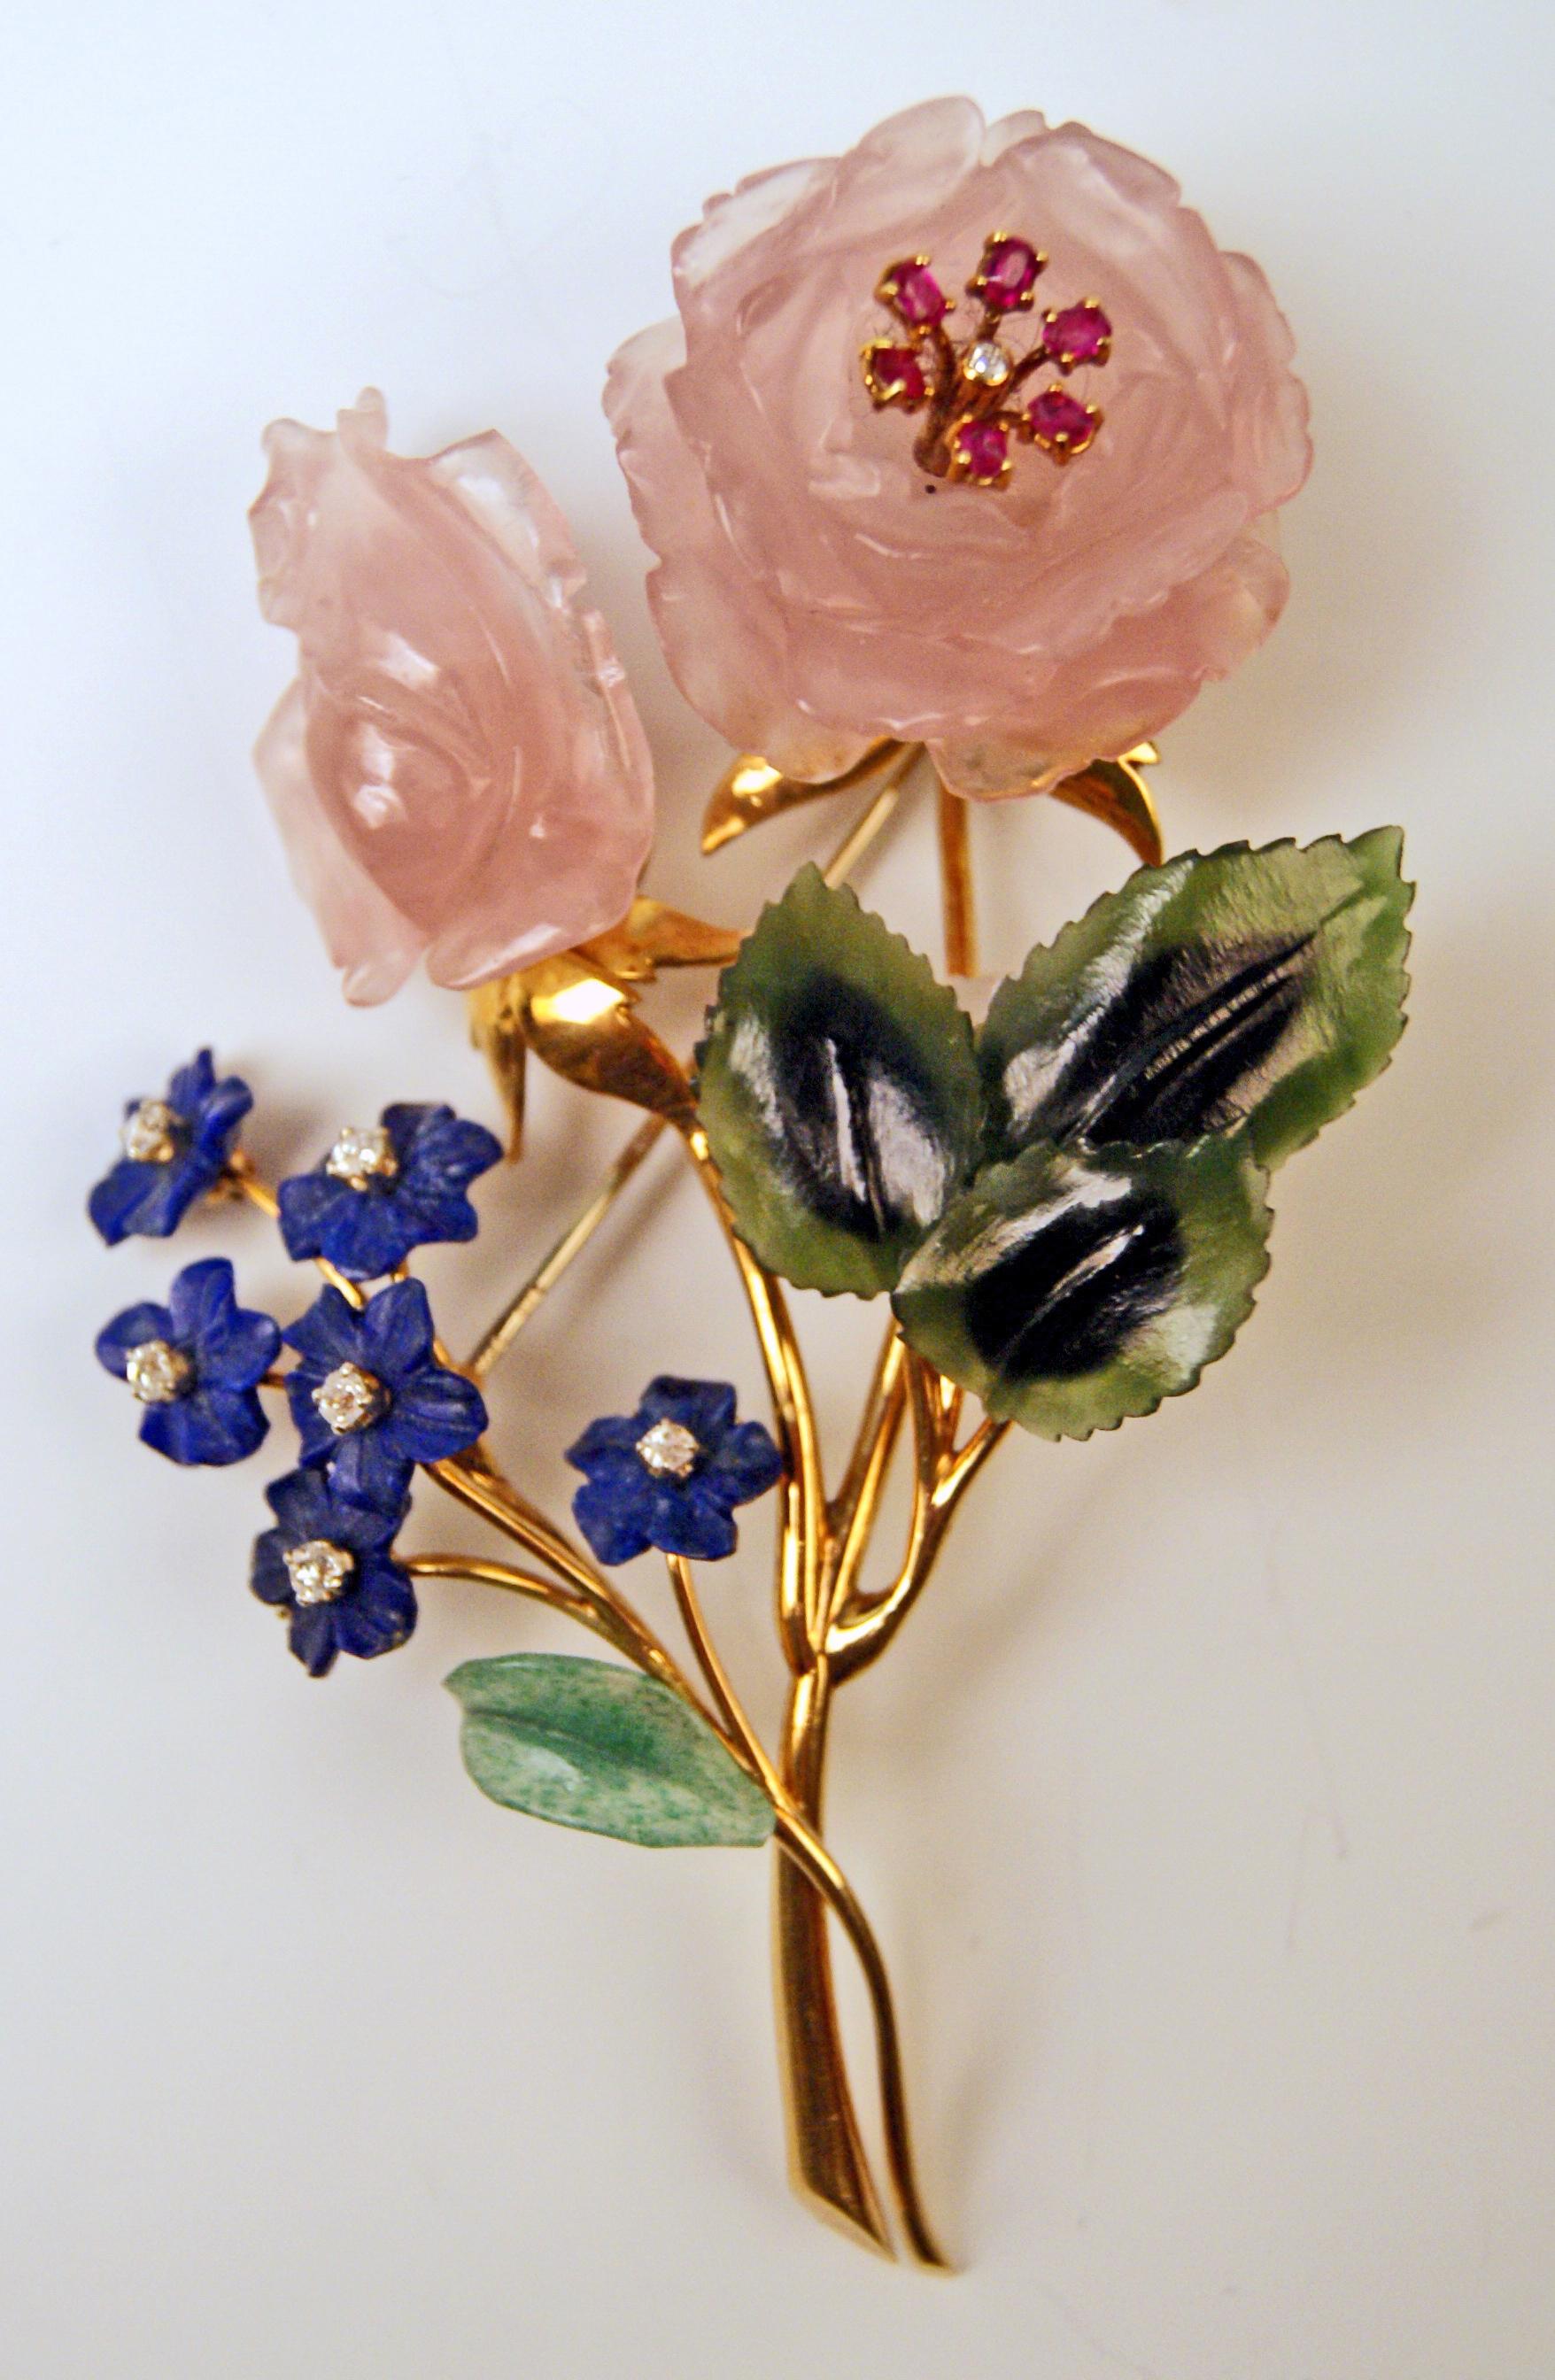 Le plus beau bijou réalisé au cours de la seconde moitié du XXe siècle :
La broche, en forme de bouquet de fleurs, est abondamment recouverte de diverses pierres précieuses : Ce plus beau bijou en or jaune est recouvert de quartz rose, de rubis, de